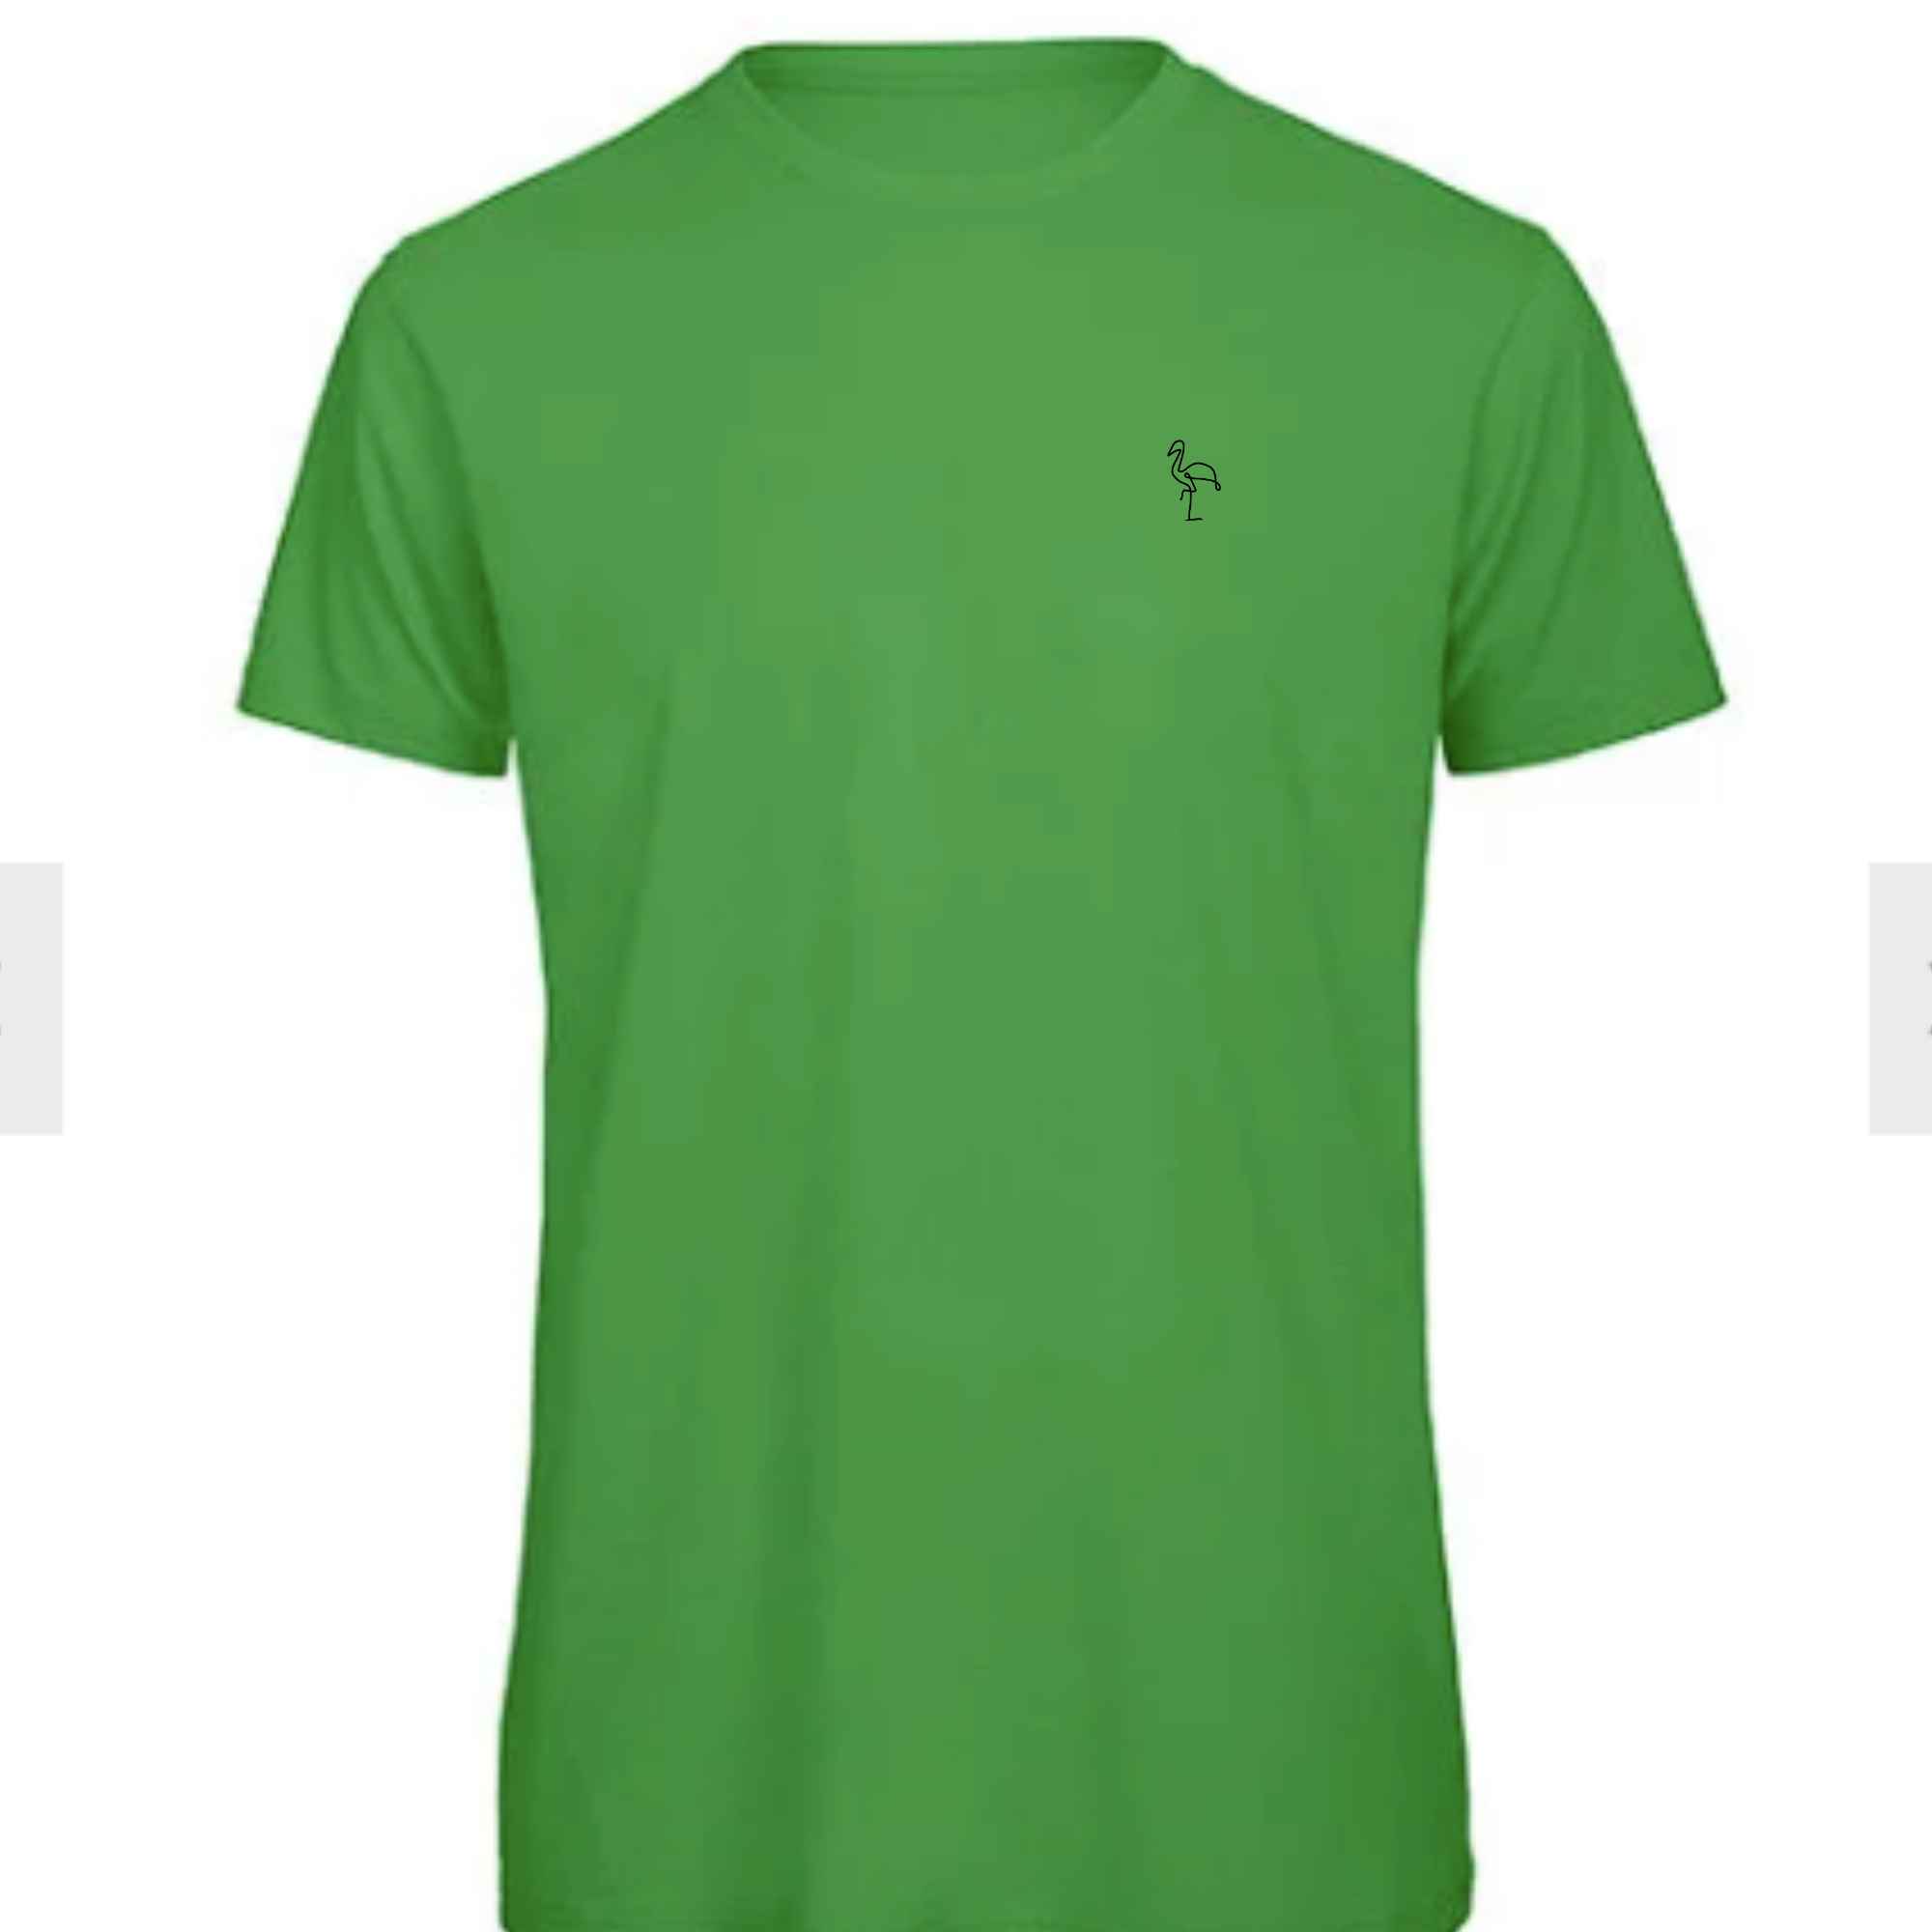 Grünes Flamingo T-Shirt mit einem Stickmotiv auf der Brust für Herren geeignet